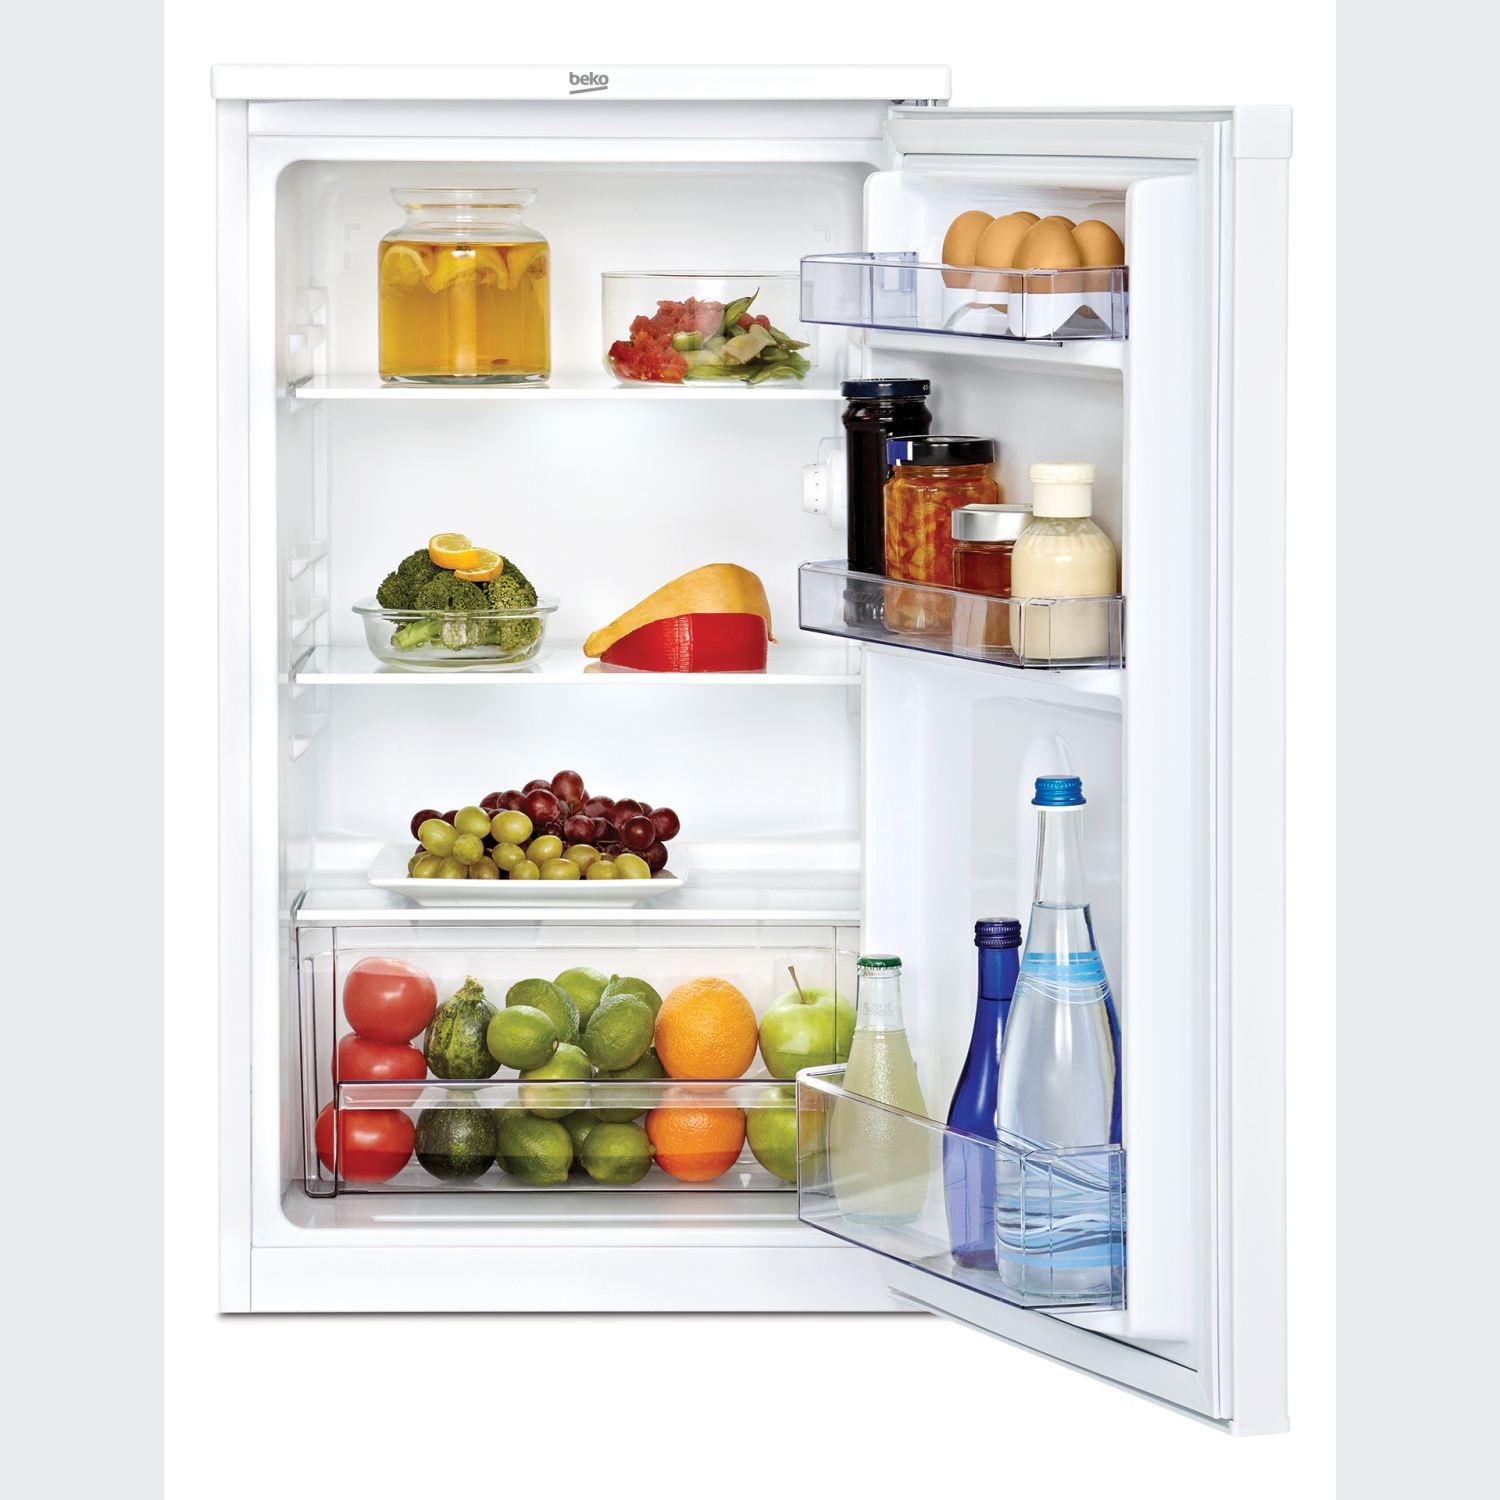 Image of Beko TS1 90020 koelkast